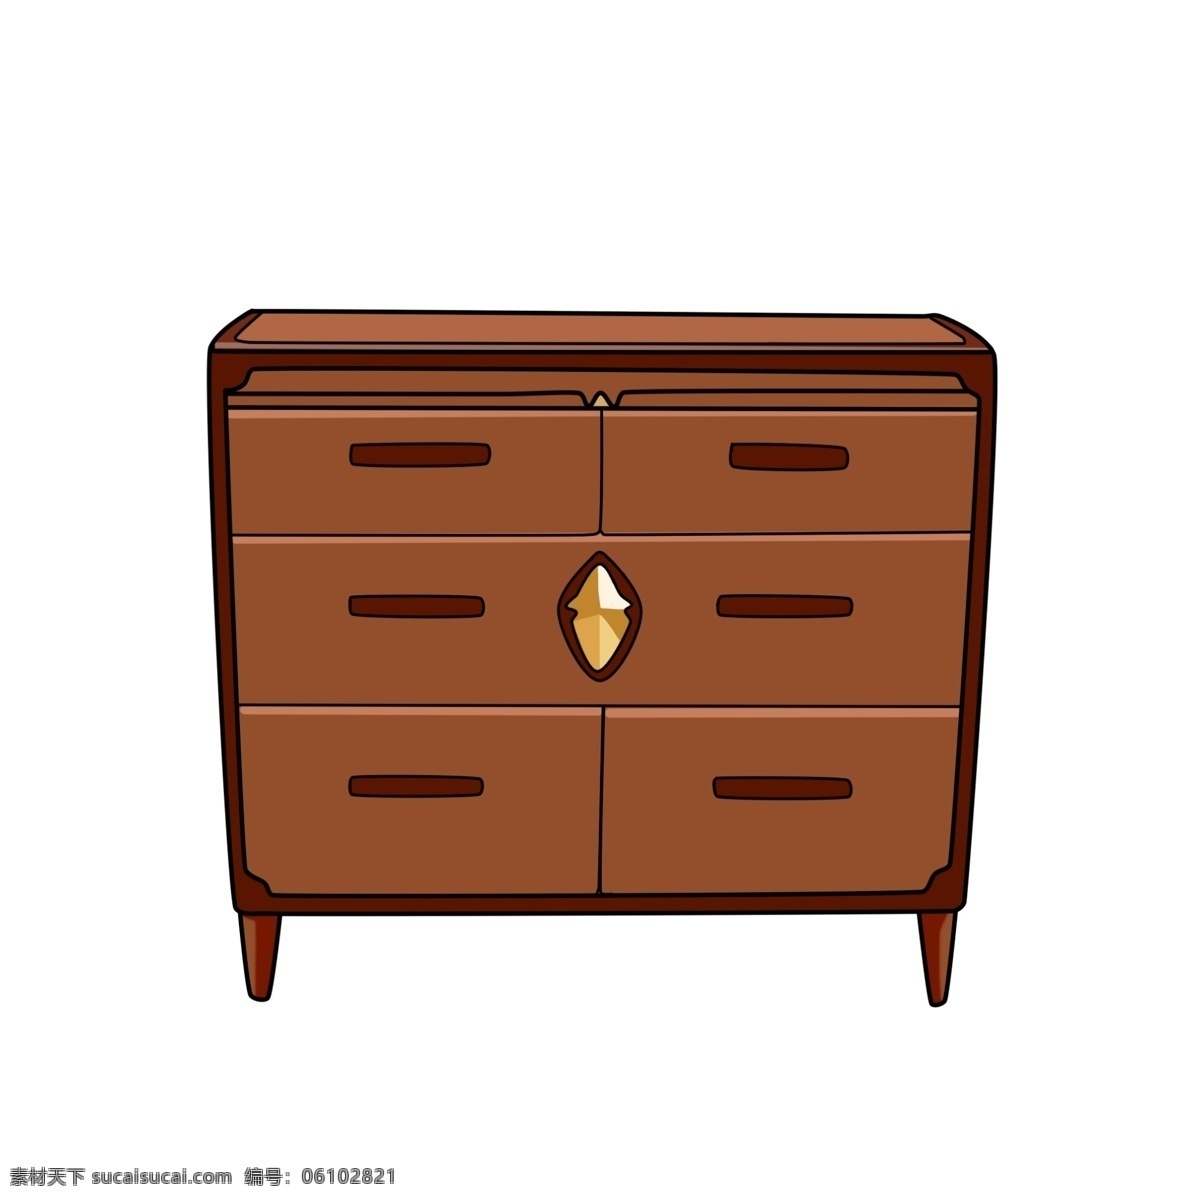 精美 木质 柜子 插画 木质柜子 立柜 家具插画 精美的柜子 木质家具插画 卡通家具插画 棕色立柜插画